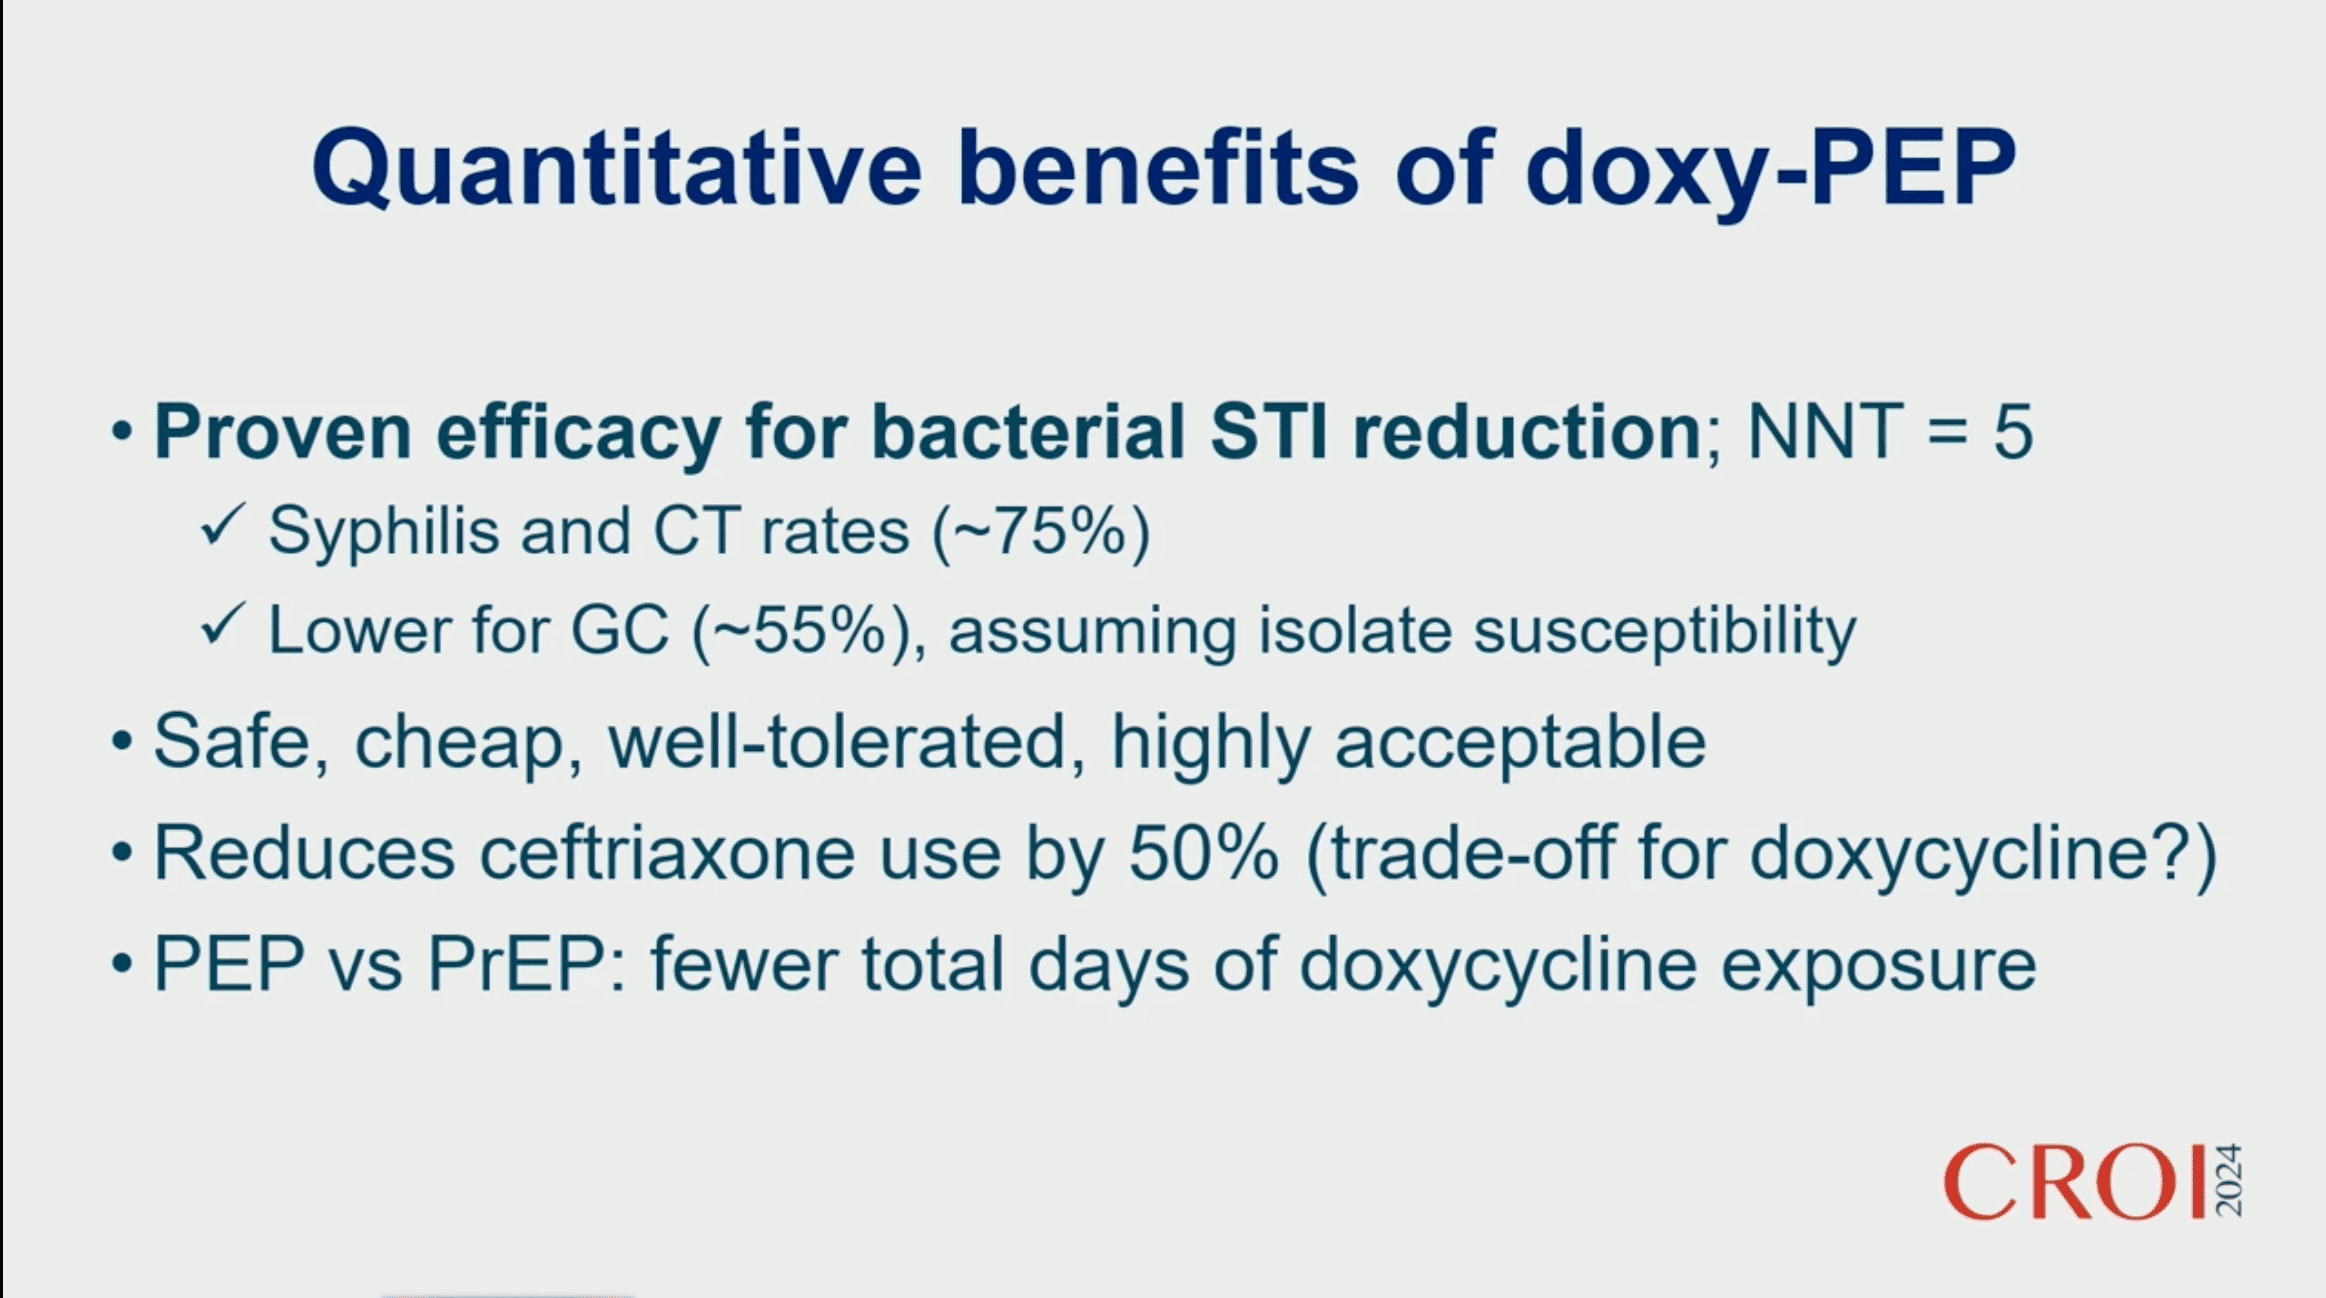 Bénéfices quantitatifs de doxyPEP
• Efficacité prouvée pour la réduction des IST bactériennes ; NNT = 5
• Taux de syphilis et de CT (~ 75 %)
r Inférieur pour GC (~ 55 %), en supposant la sensibilité de l'isolat
• Sûr, bon marché, bien toléré, hautement acceptable
• Réduit l'utilisation de ceftriaxone de 50 % (compromis pour la doxycycline ?)
• PEP vs PrEP : moins de jours d'exposition à la doxycycline